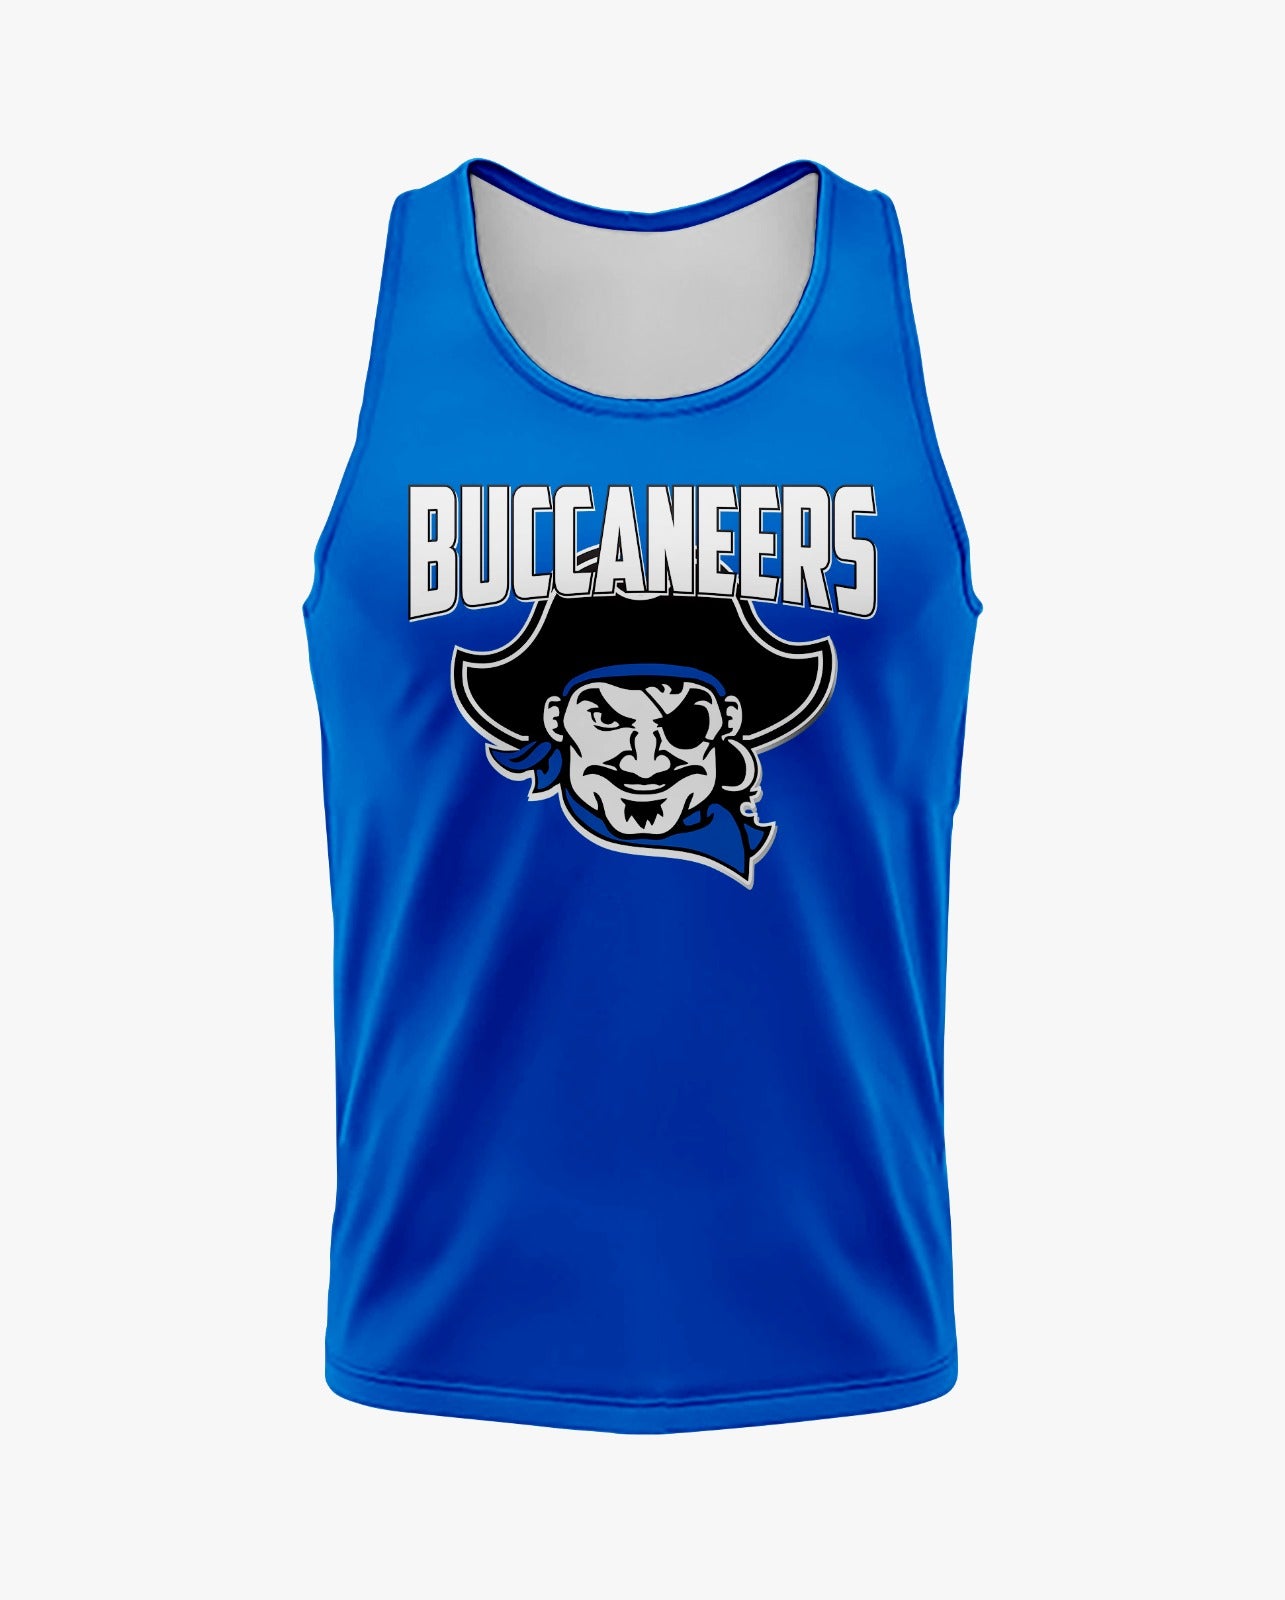 Buccaneers Cheerleading Dri Tech Men's Tank Top ~ Solid Blue